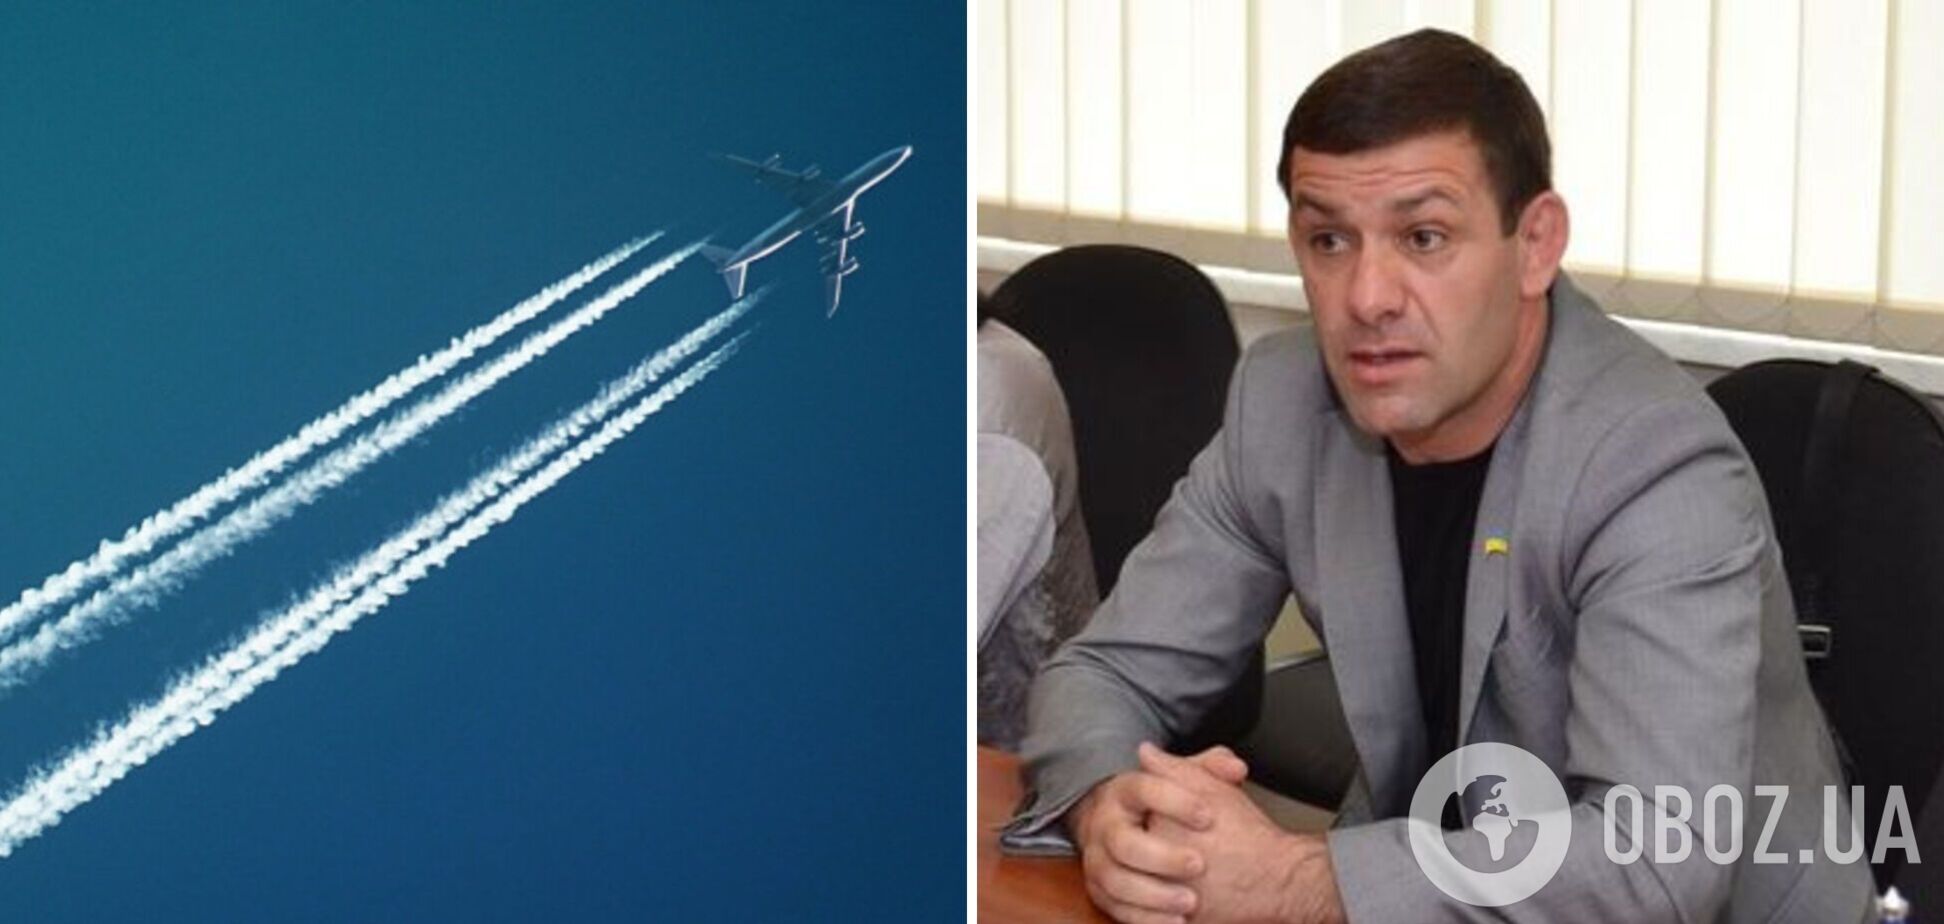 Літаки, хімтрейли та коронавірус: депутат Одеської облради розповсюджував фейки про COVID-19 у мережі. Фото